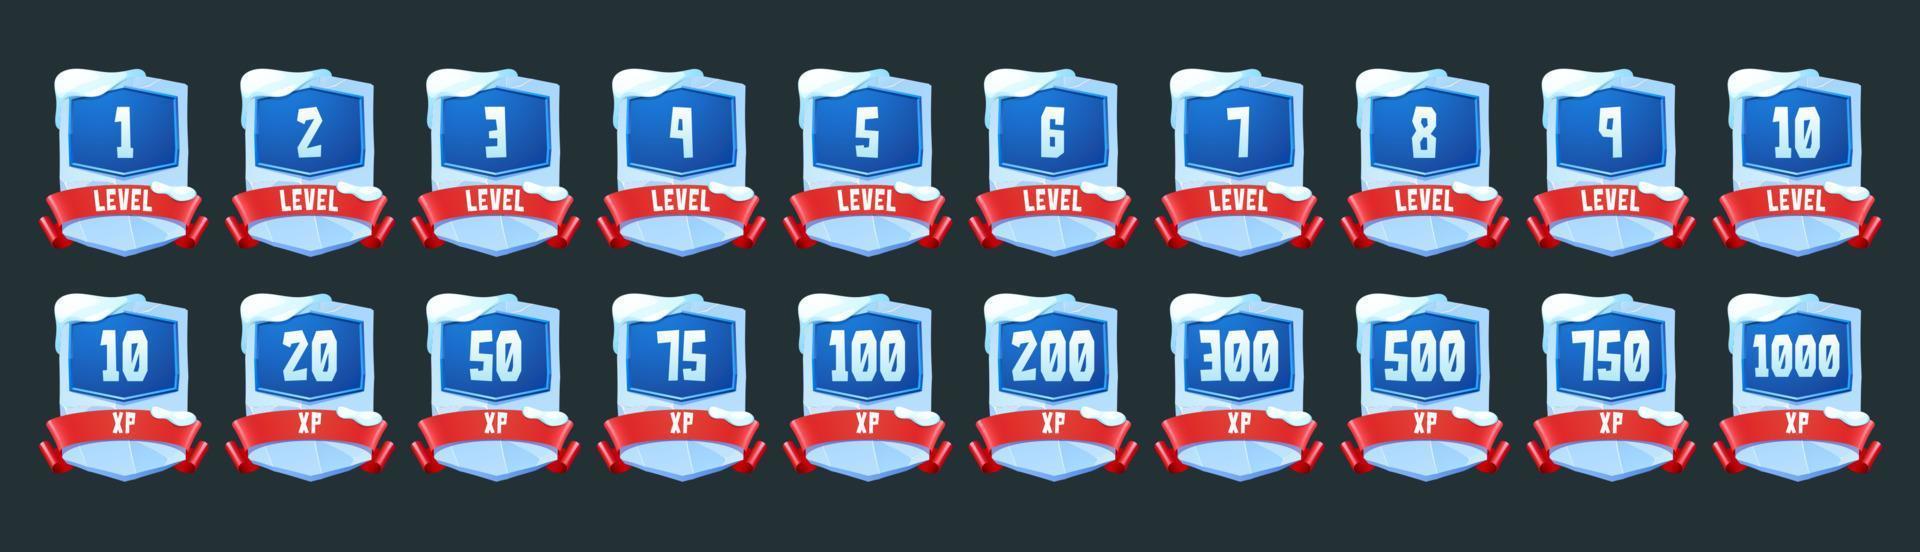 insignias de hielo con número de nivel y xp para el juego vector